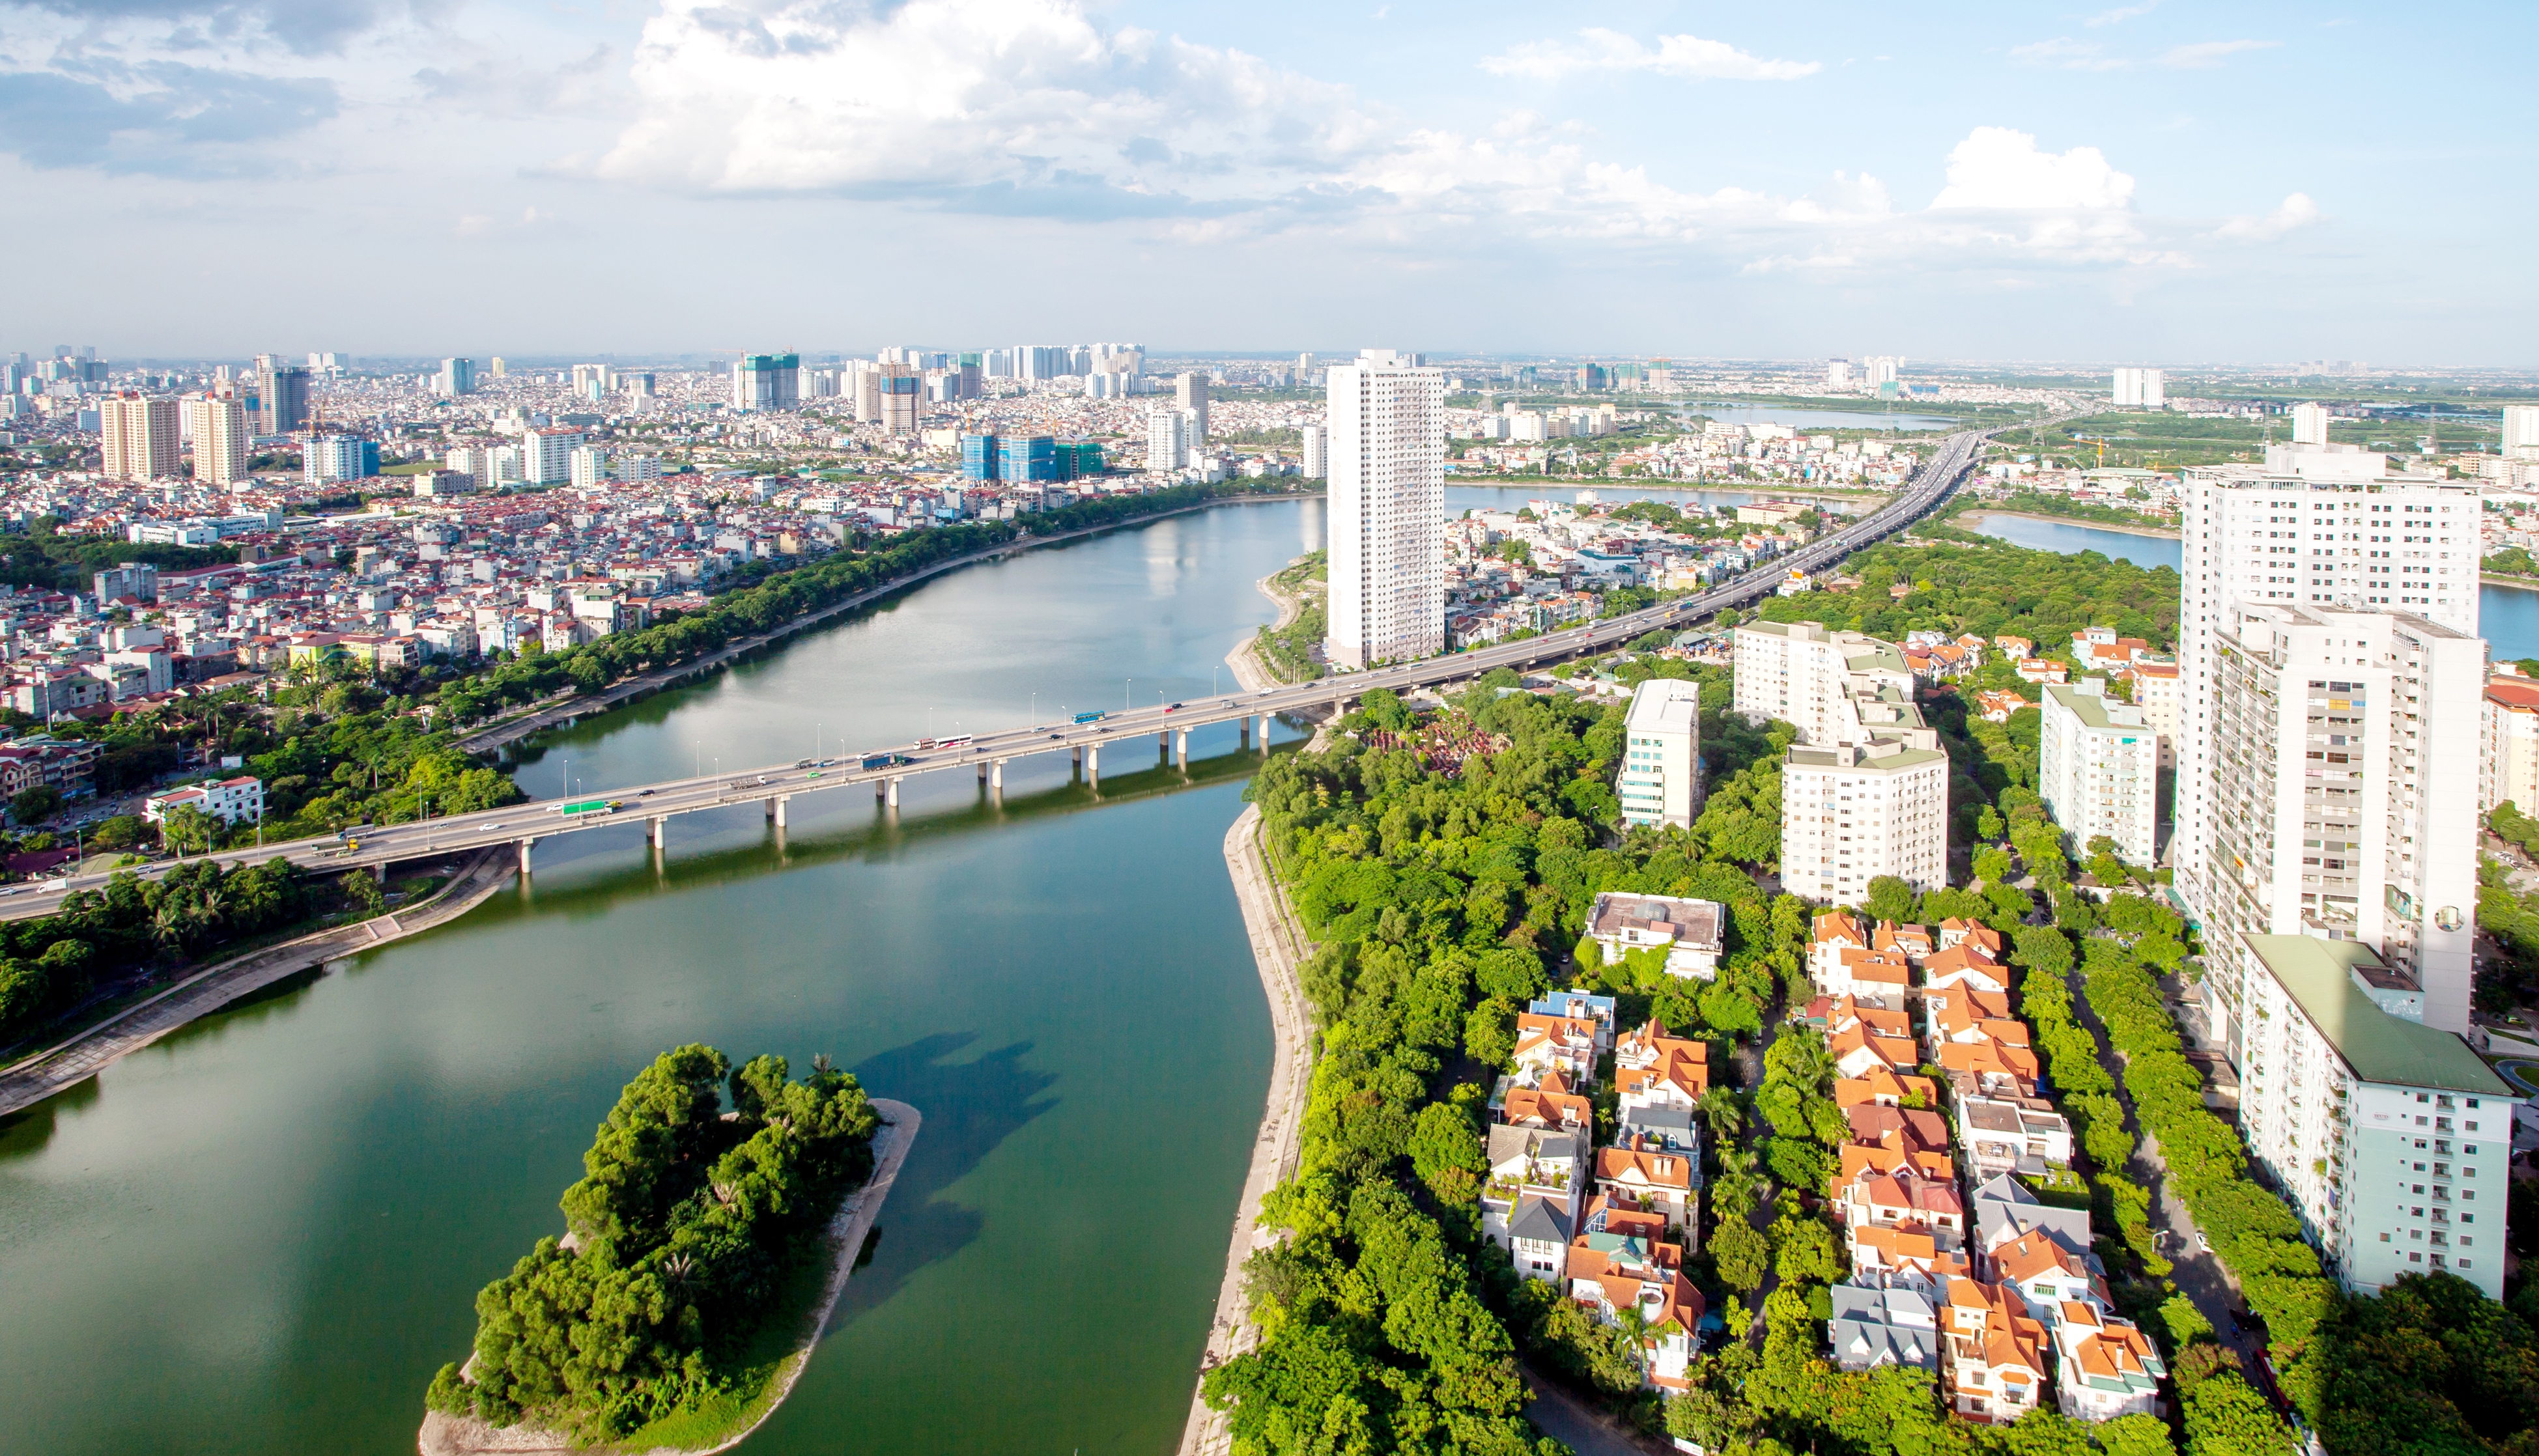 Vững vàng vượt qua thử thách, đồng tâm hiệp lực xây dựng Thủ đô Hà Nội ngày càng  giàu đẹp, văn minh, hiện đại